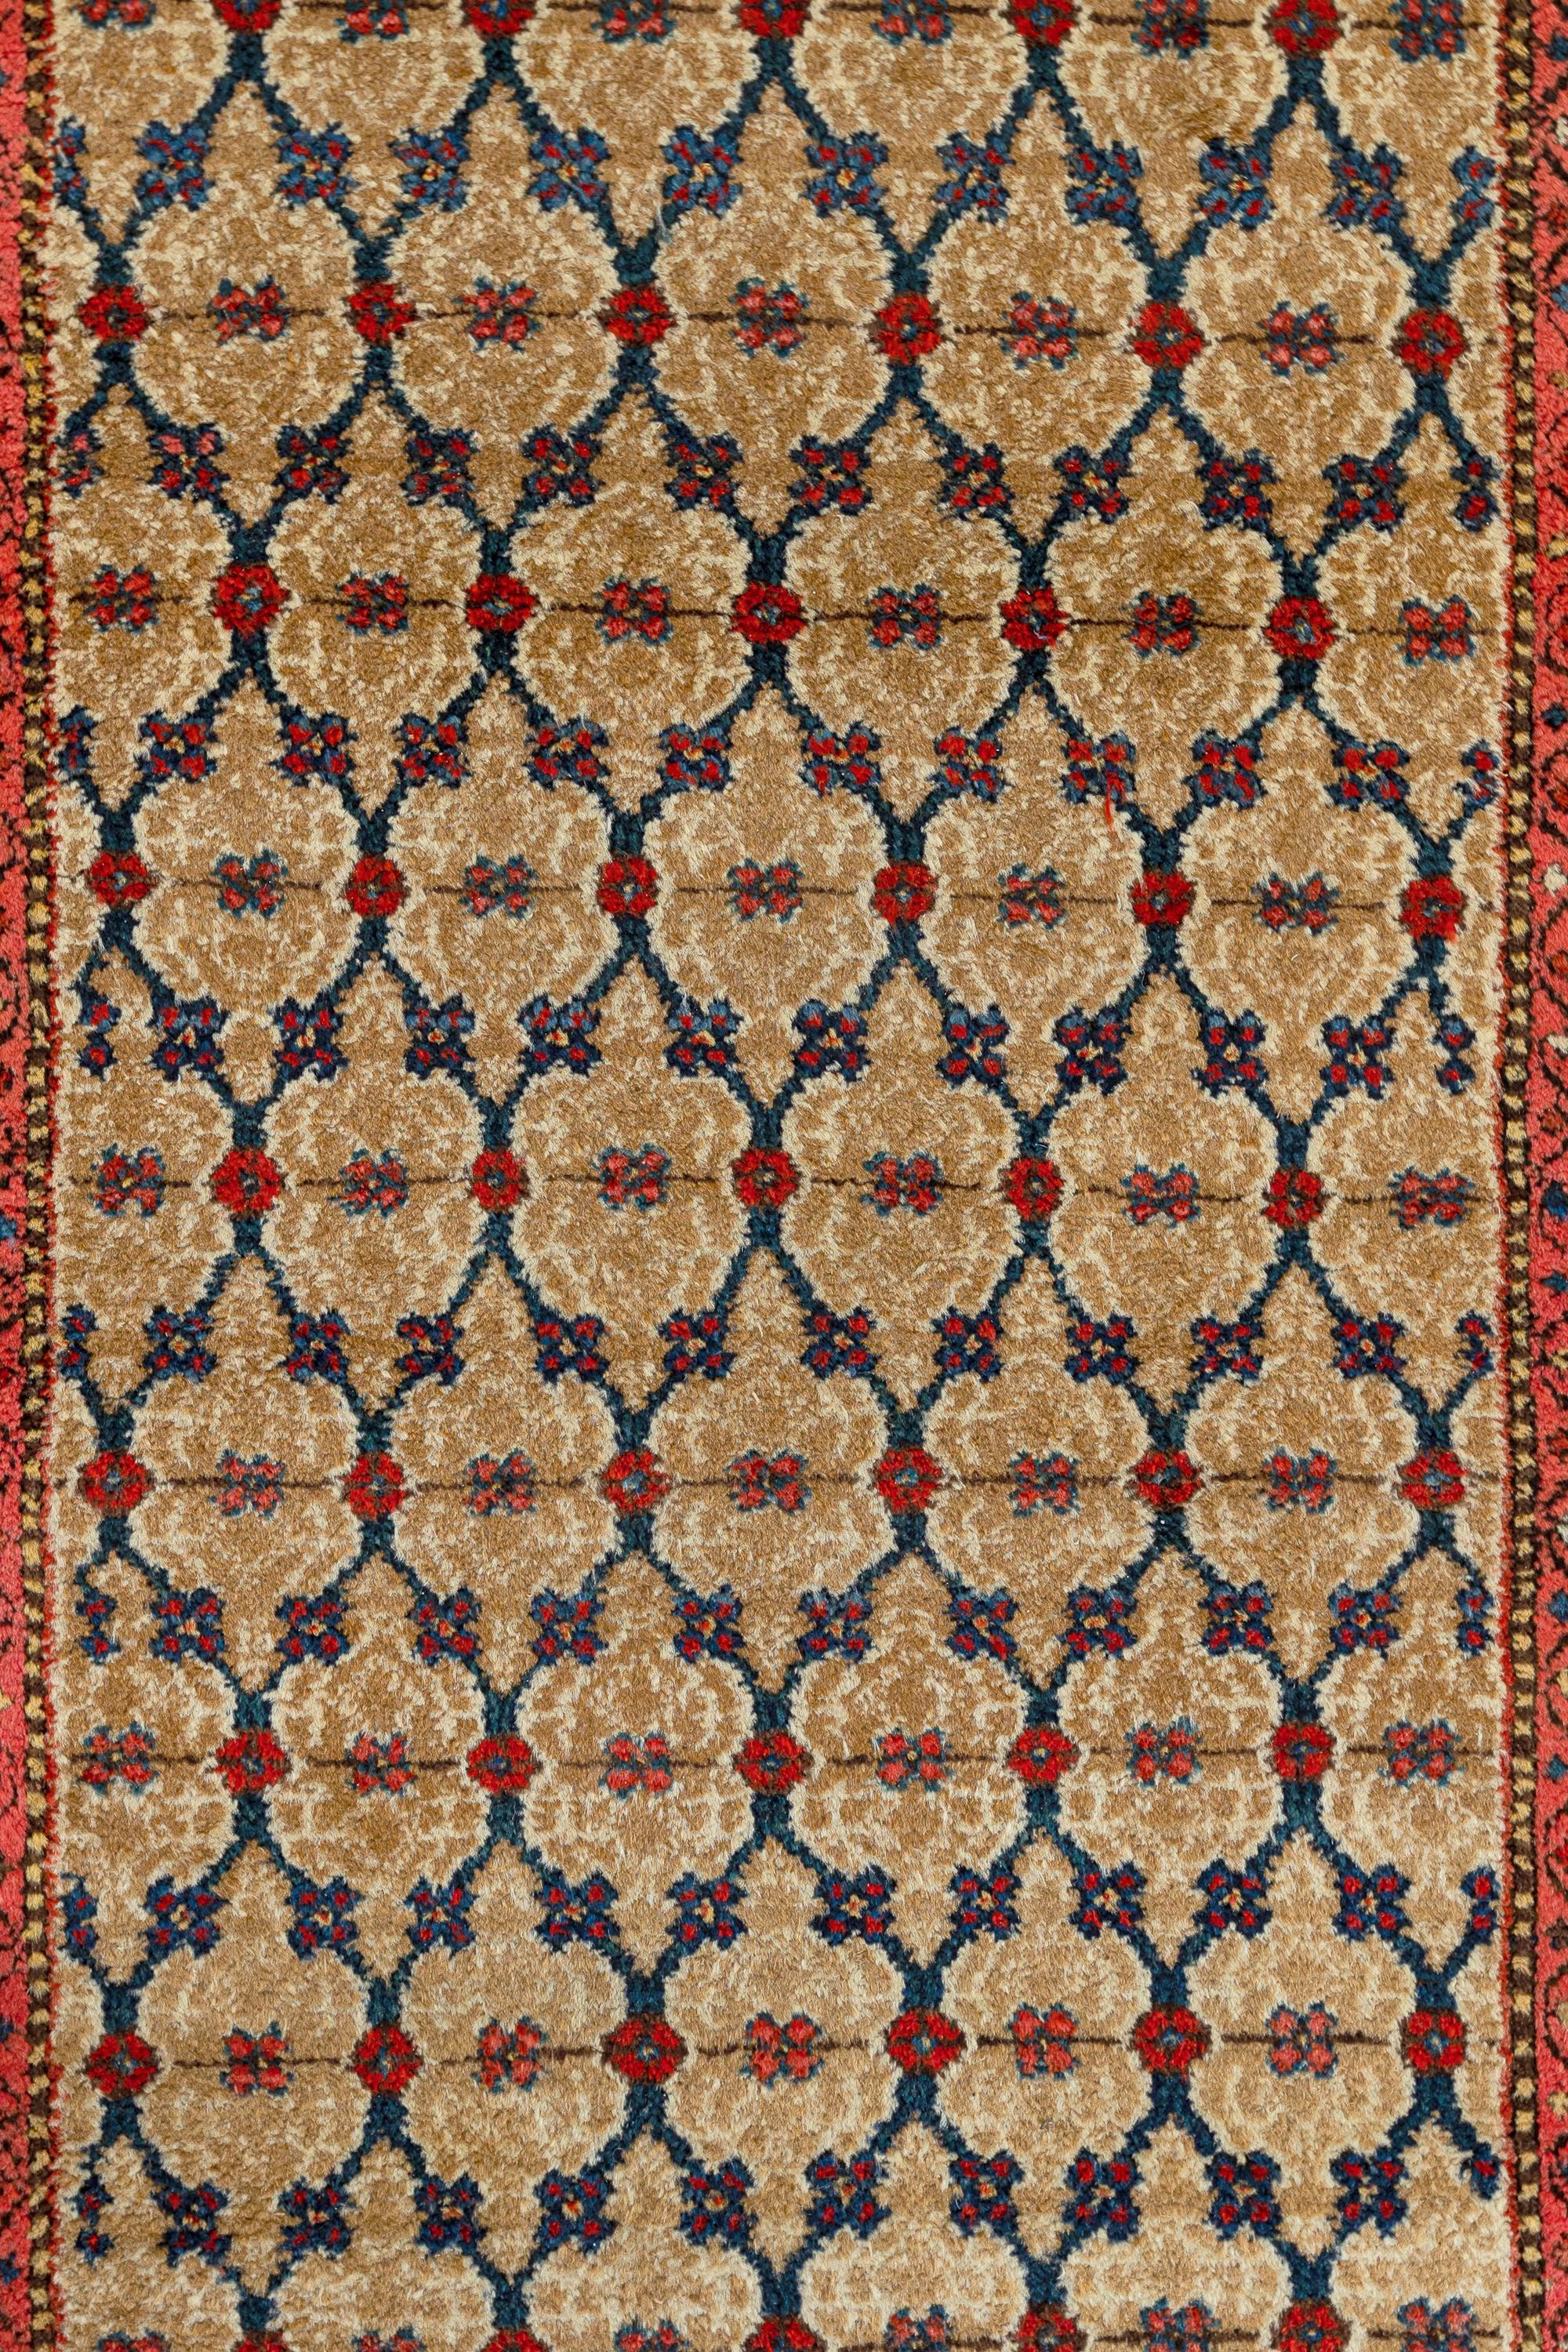 Malayer - Nord-ouest de la Perse

Ancien tapis persan Malayer, tissé à la main entre les années 1900 et 1920. De nombreuses pastilles sont reliées par des fleurs qui contrastent avec le fond sablonneux du Malayer, créant un aspect rappelant un